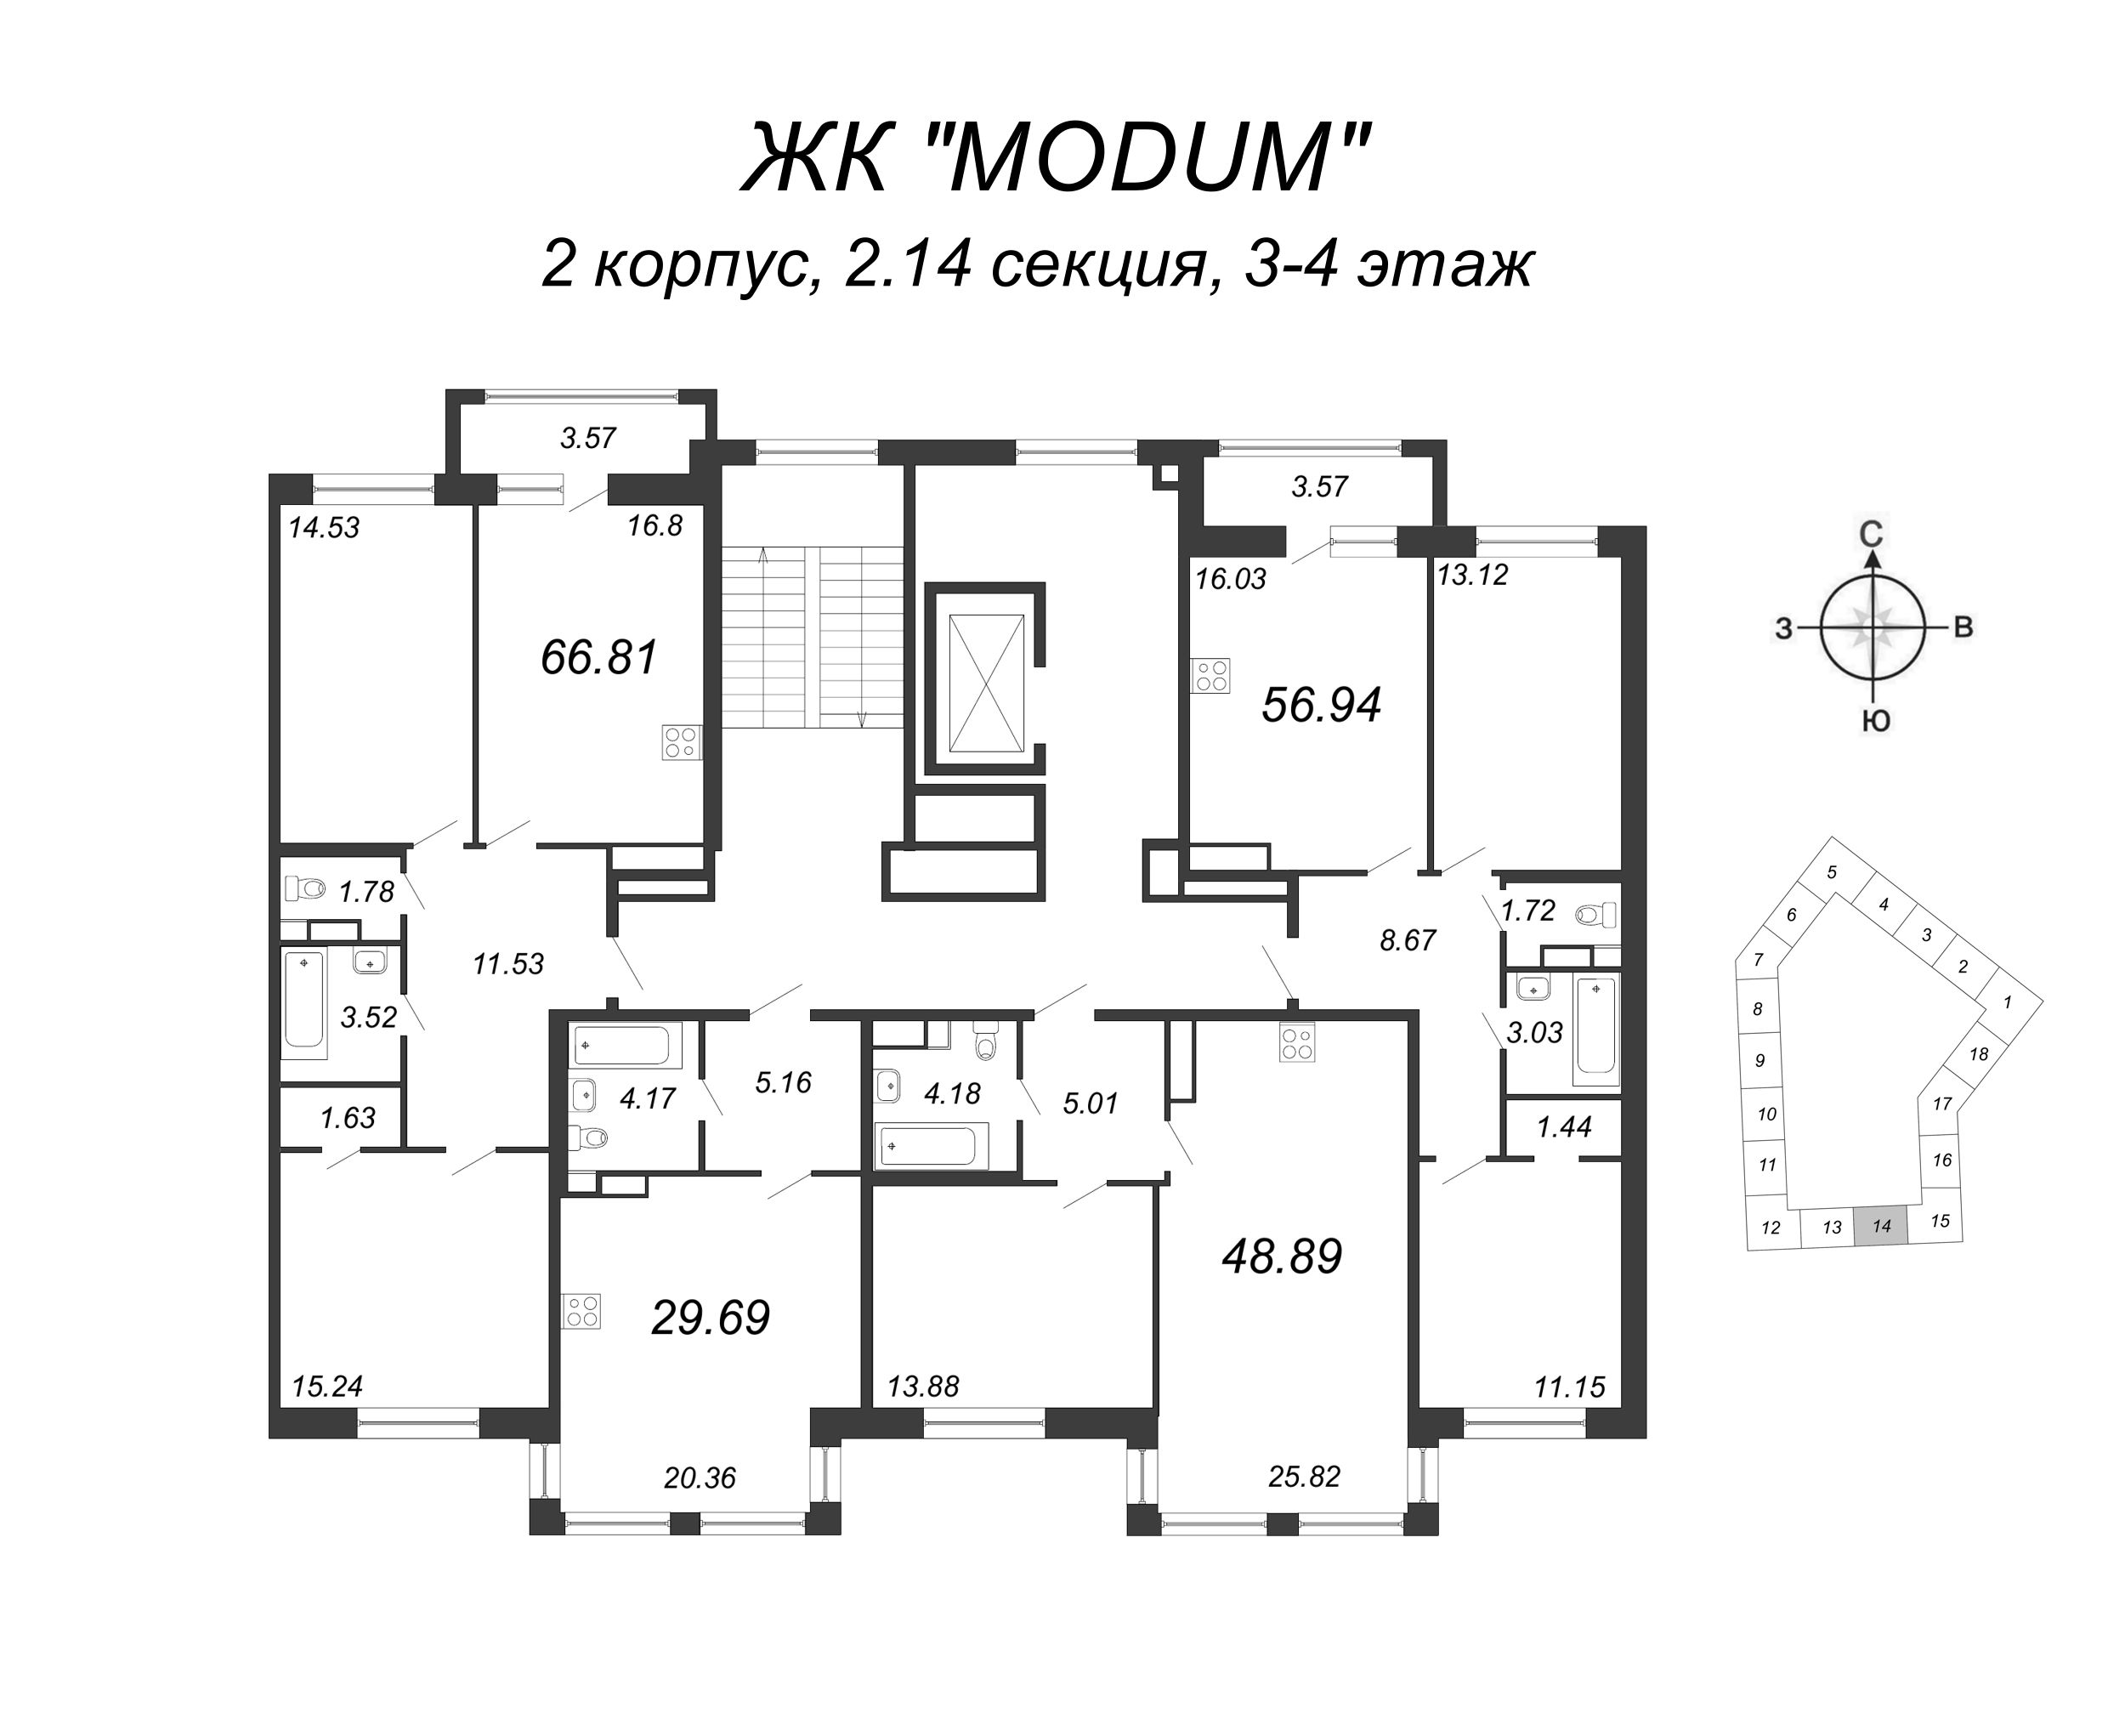 2-комнатная (Евро) квартира, 48.89 м² в ЖК "Modum" - планировка этажа